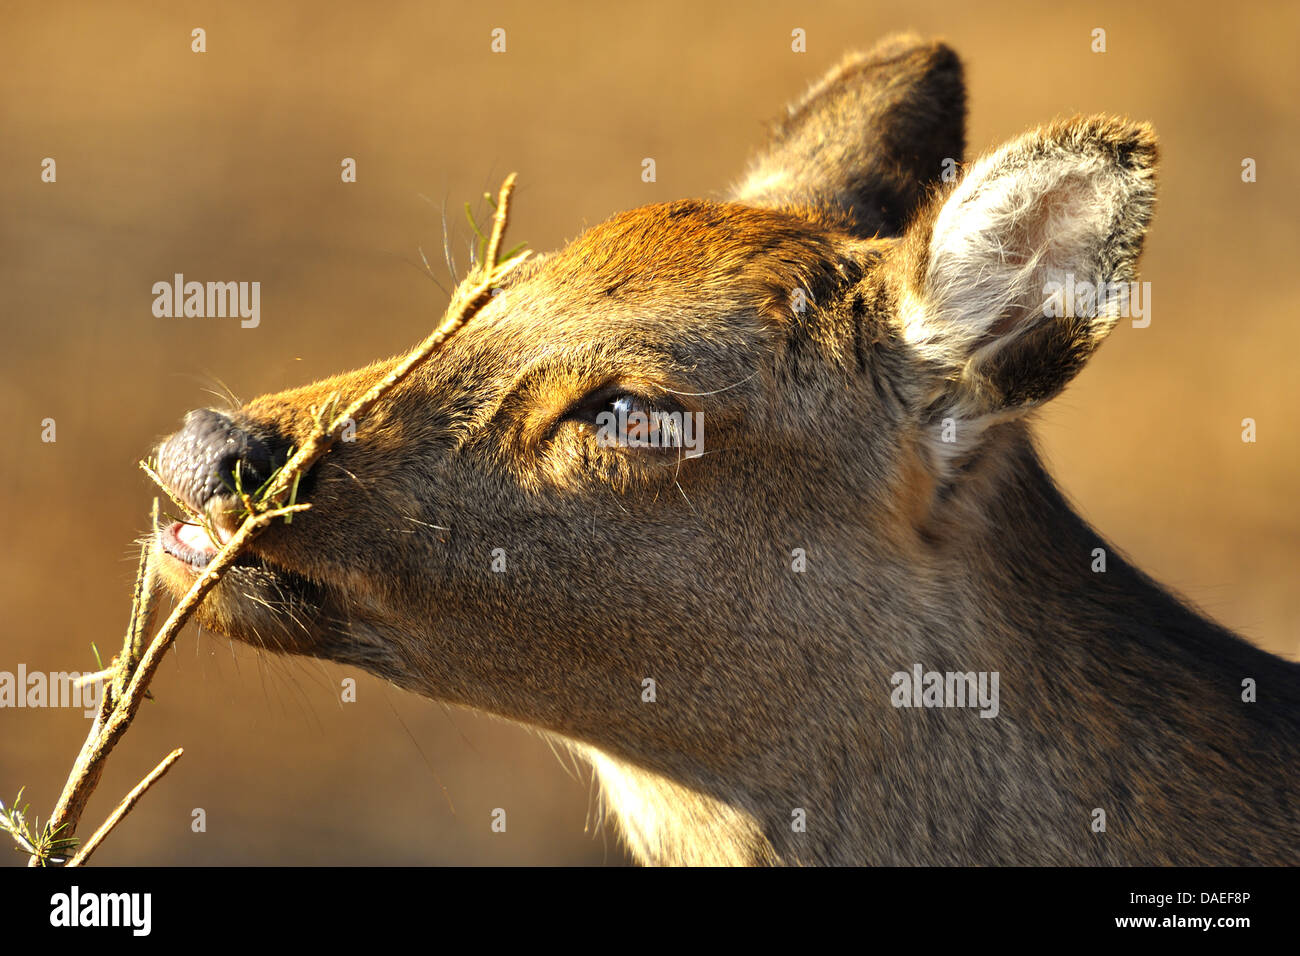 Sika deer, Tame sika deer, Tame deer (Cervus nippon), female, portrait Stock Photo